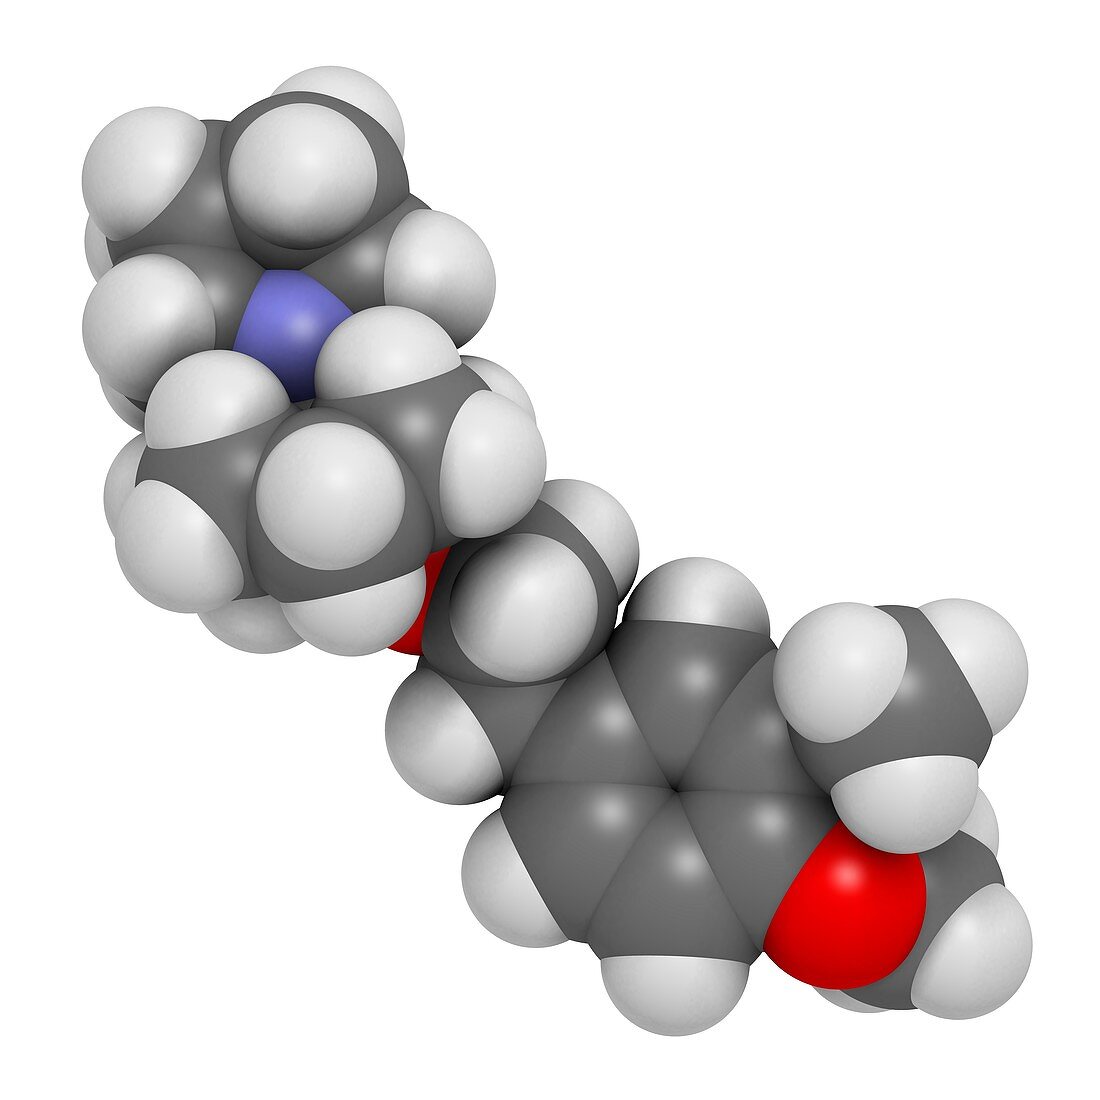 Vernakalant atrial fibrillation drug molecule